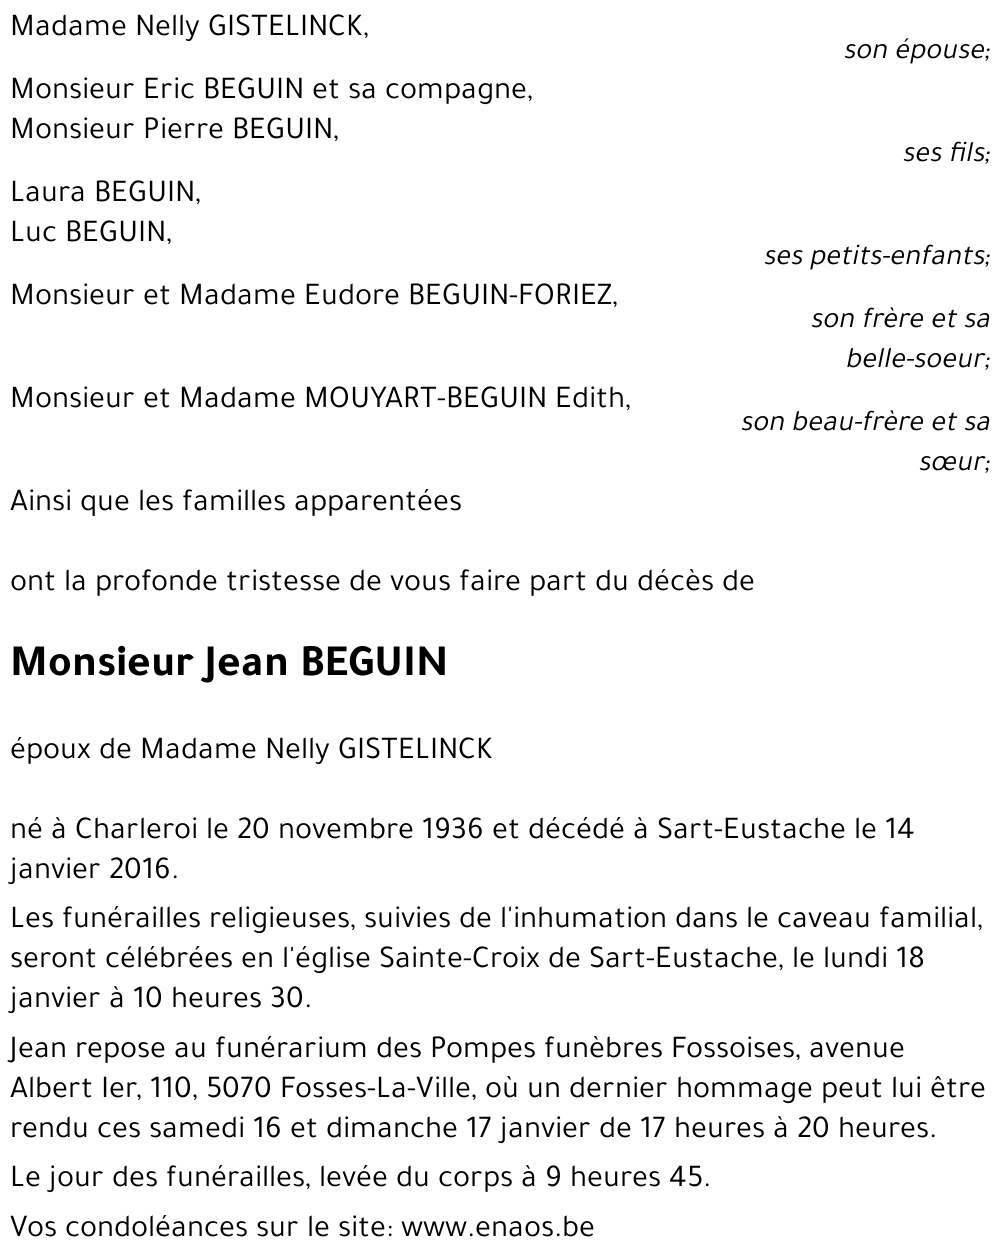 Avis de décès de Jean BEGUIN décédé le 14/01/2016 à Sart-Eustache ...